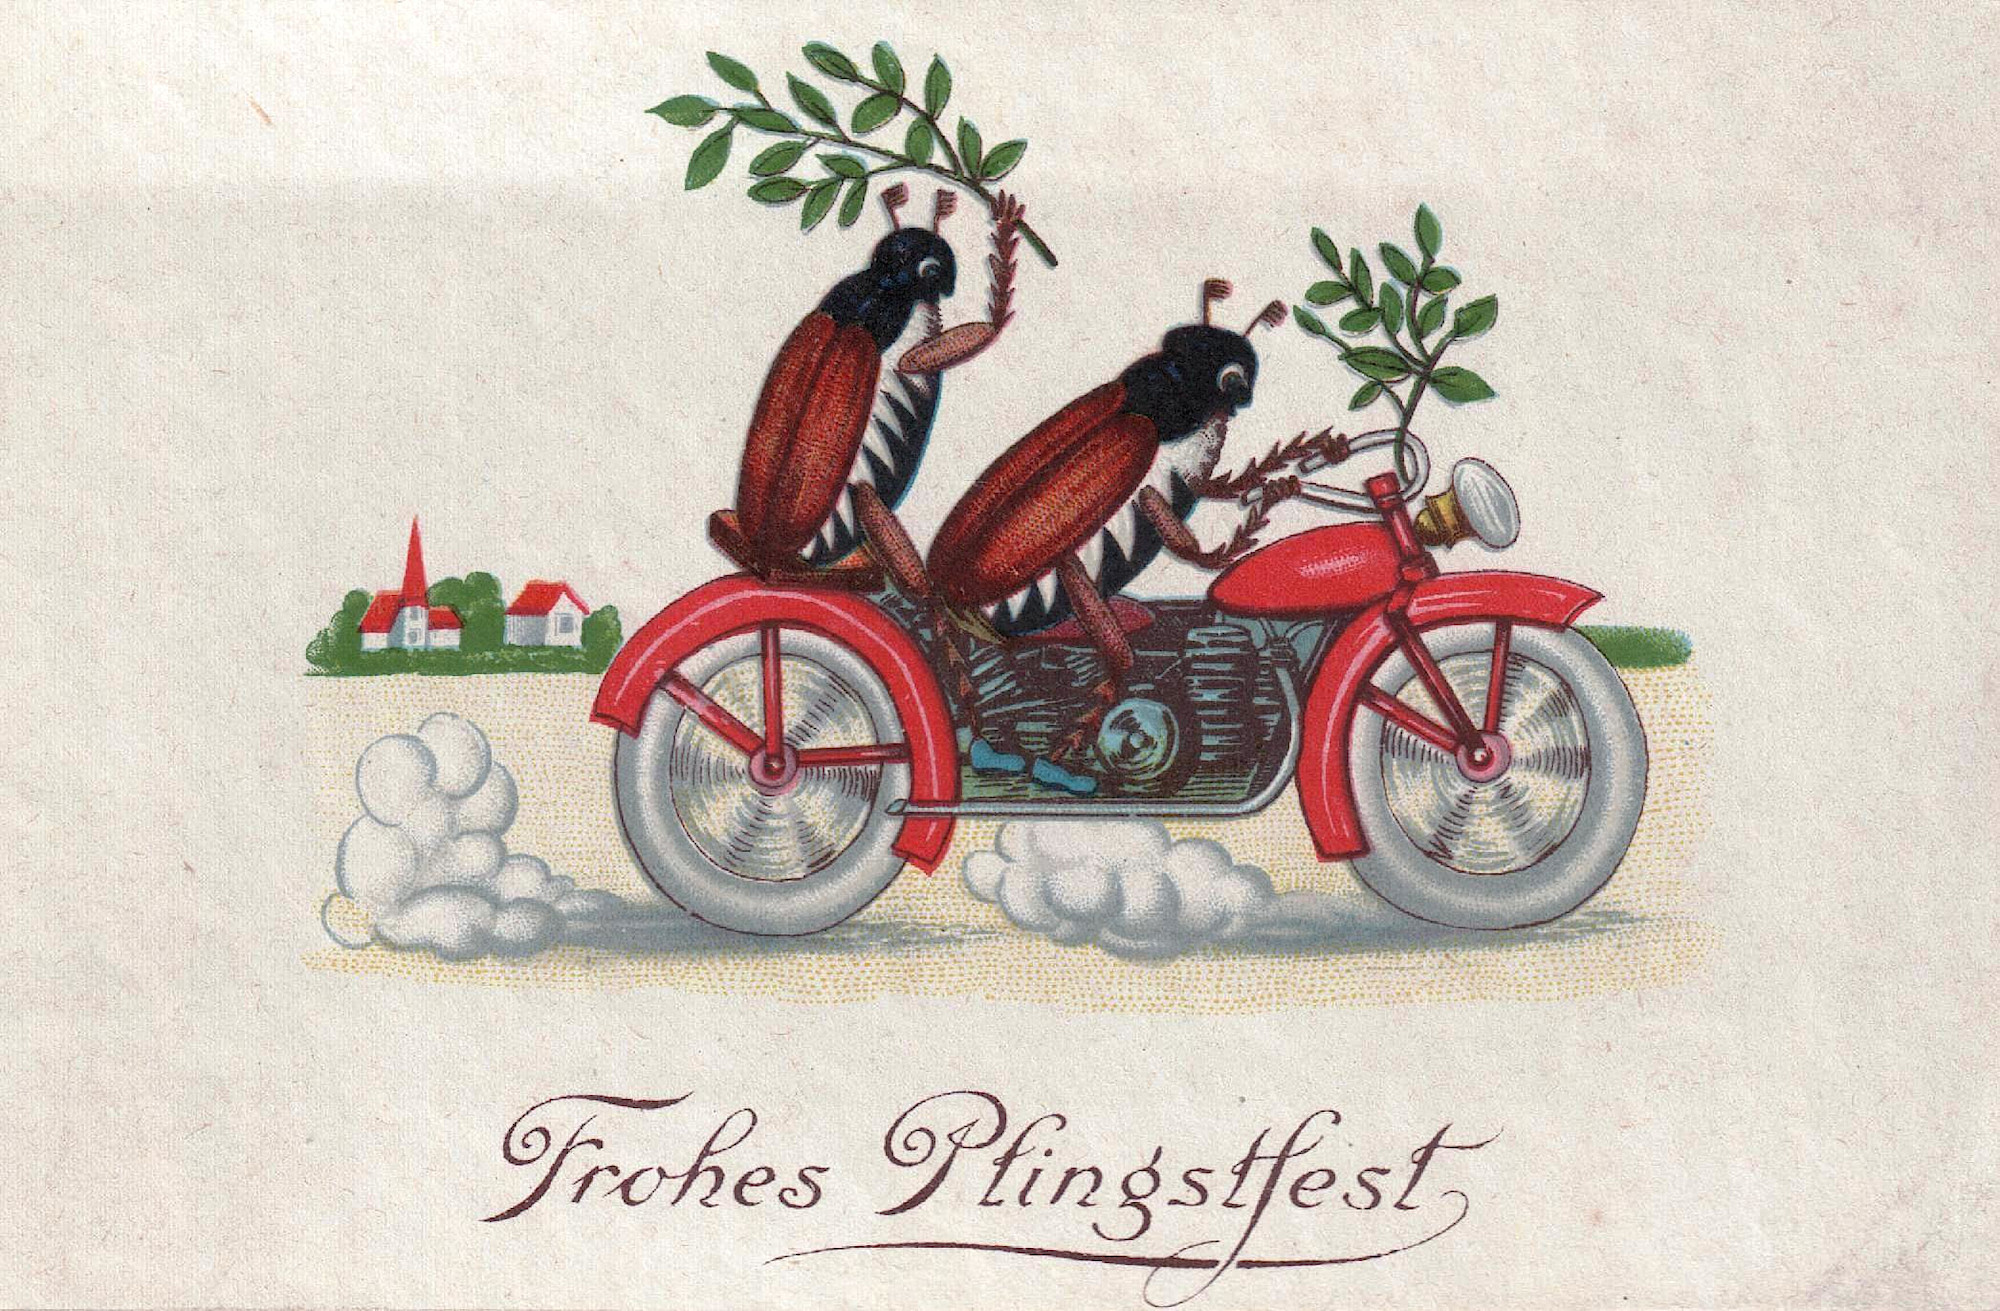 Dwa chrząszcze jadą na czerwonym motocyklu. Jeden z nich trzyma gałązkę brzozową. Taką samą gałązką przyozdobiona jest kierownica motocyklu. U dołu napis: „Frohes Pfingstfest” - „Wesołego dnia Pięćdziesiątnicy!”